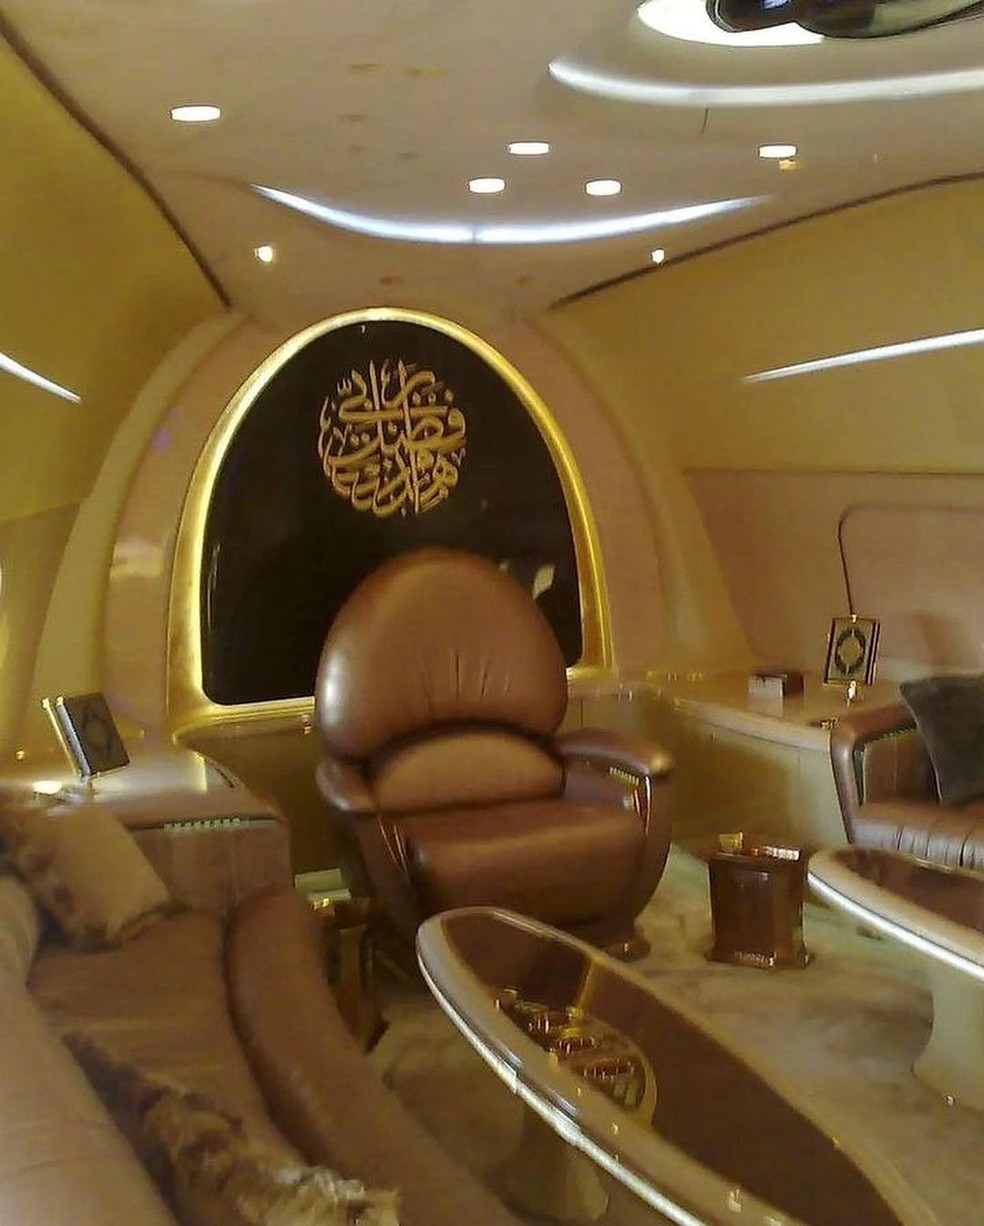 Avaliado em R$ 1 bilhão, avião usado pelo time Al-Hilal impressiona por luxo — Foto: Reprodução/Instagram